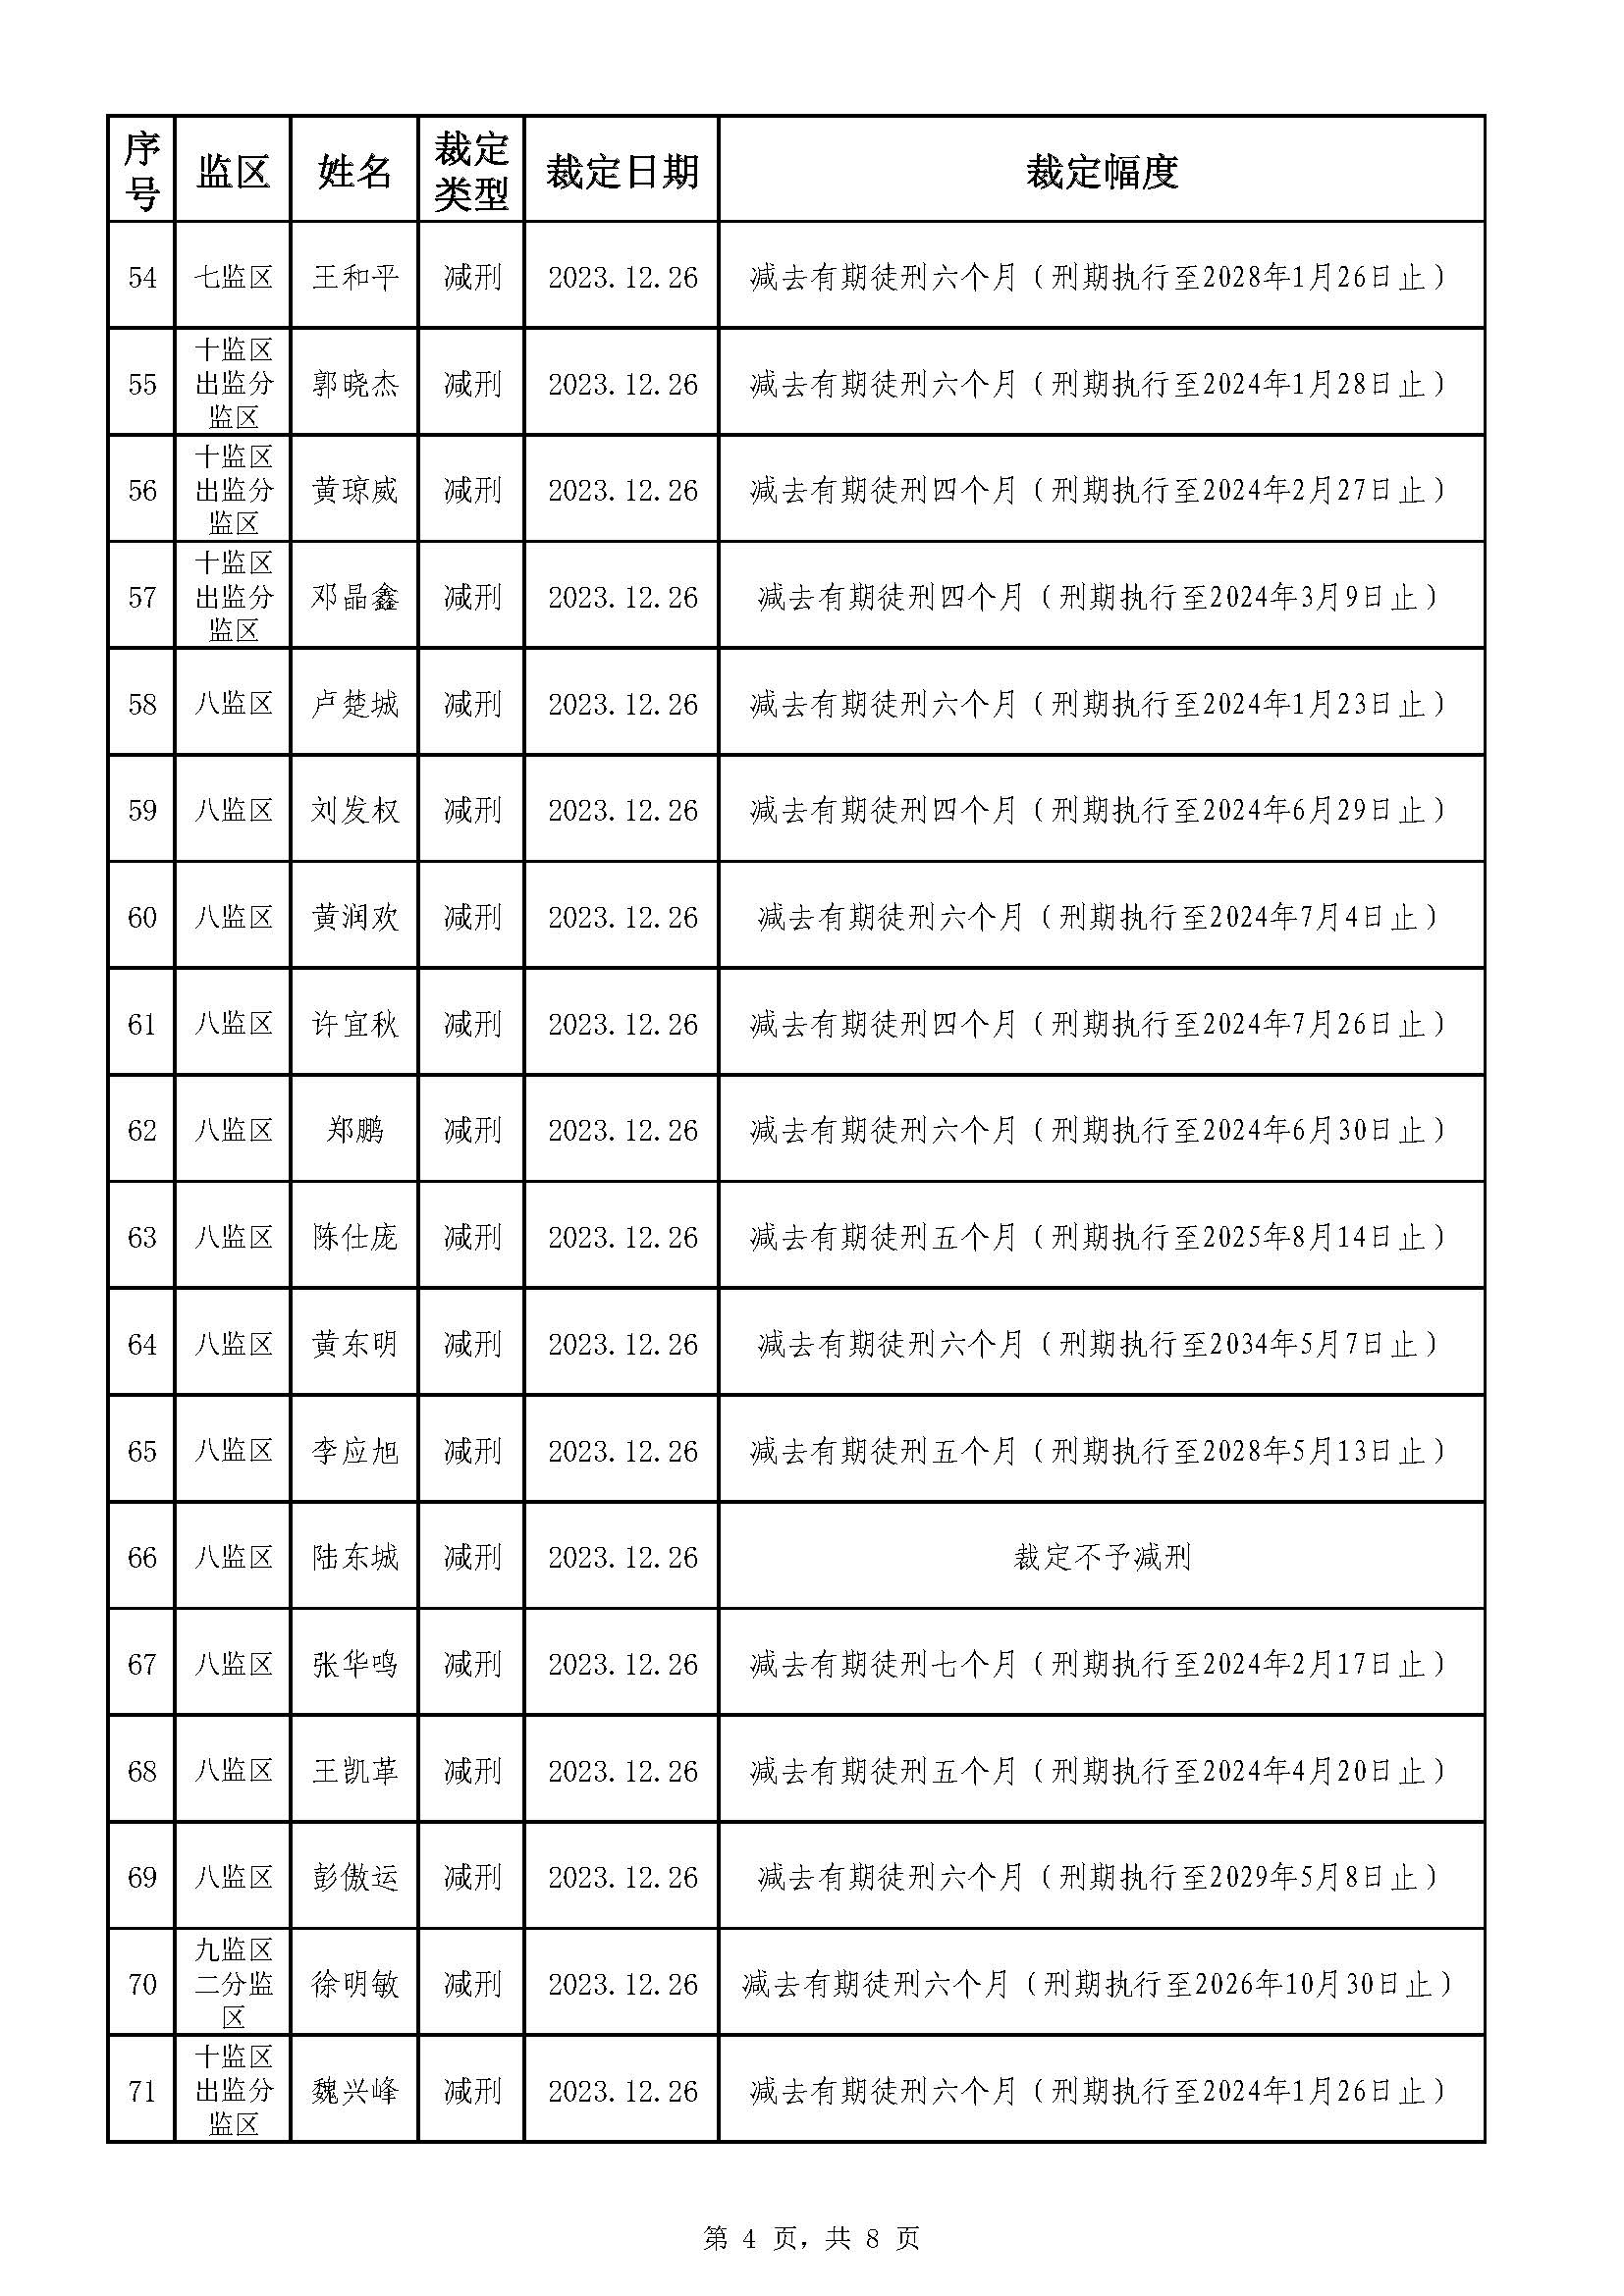 213.广东省明康监狱2023年第五批减刑假释裁定榜（公示）_页面_4.jpg